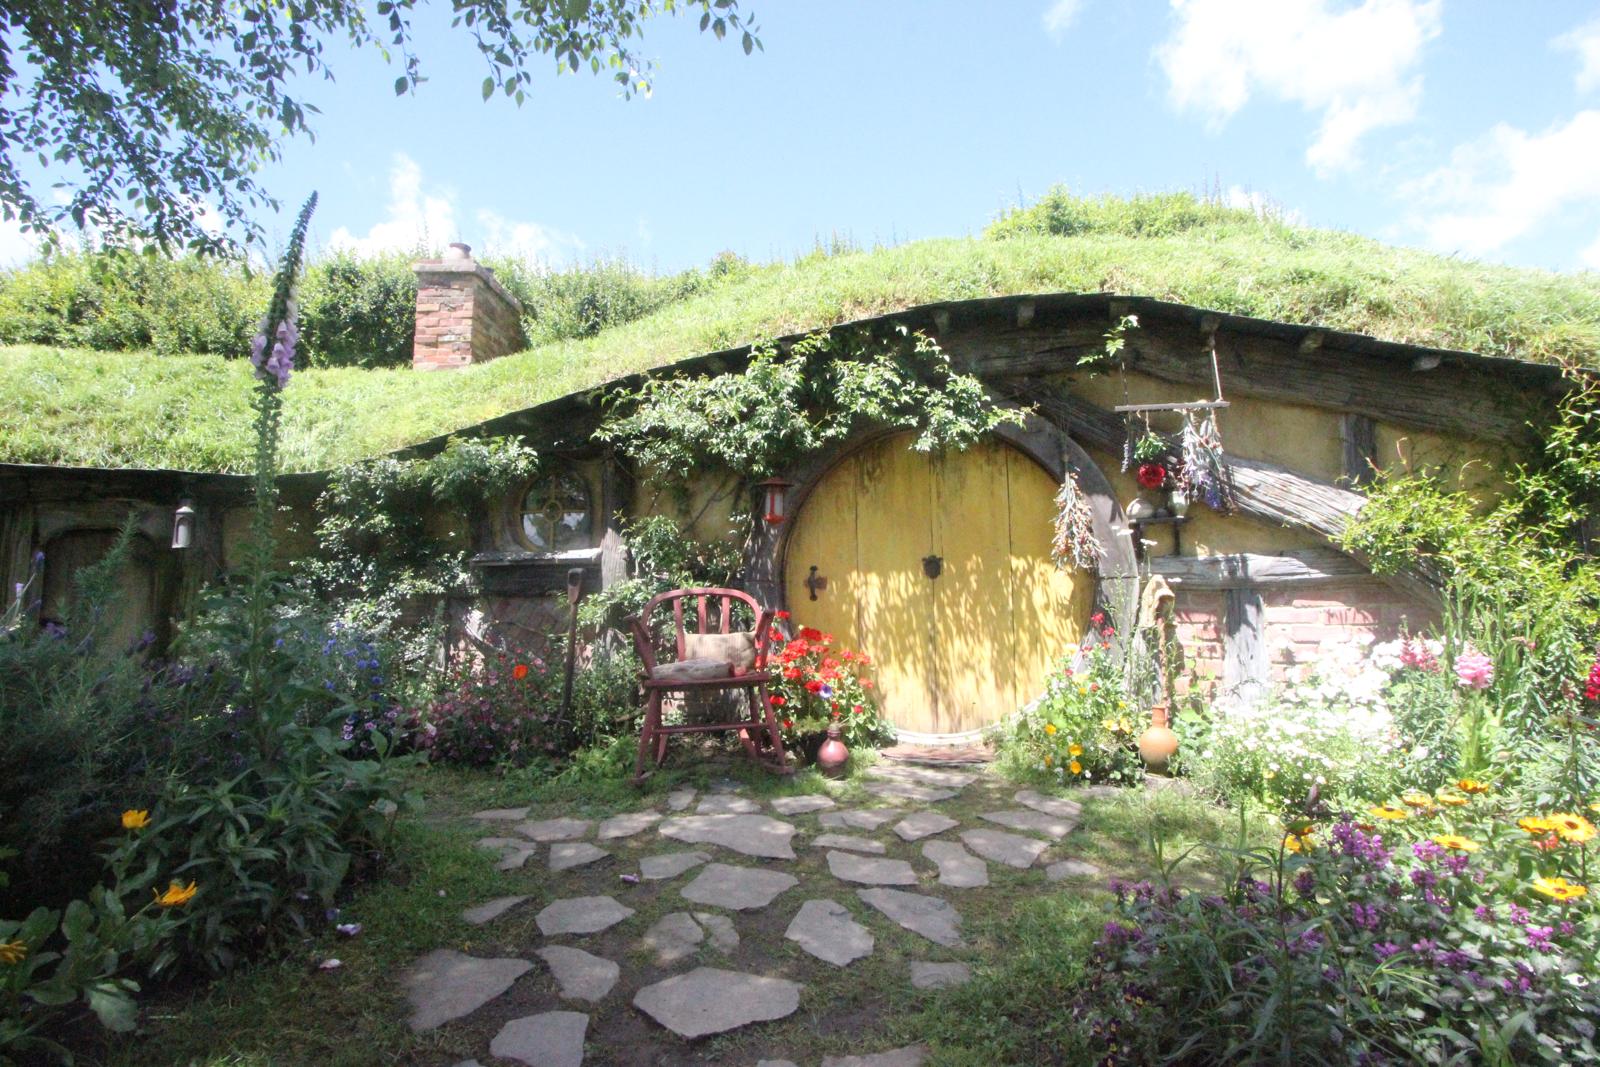 A Hobbit House